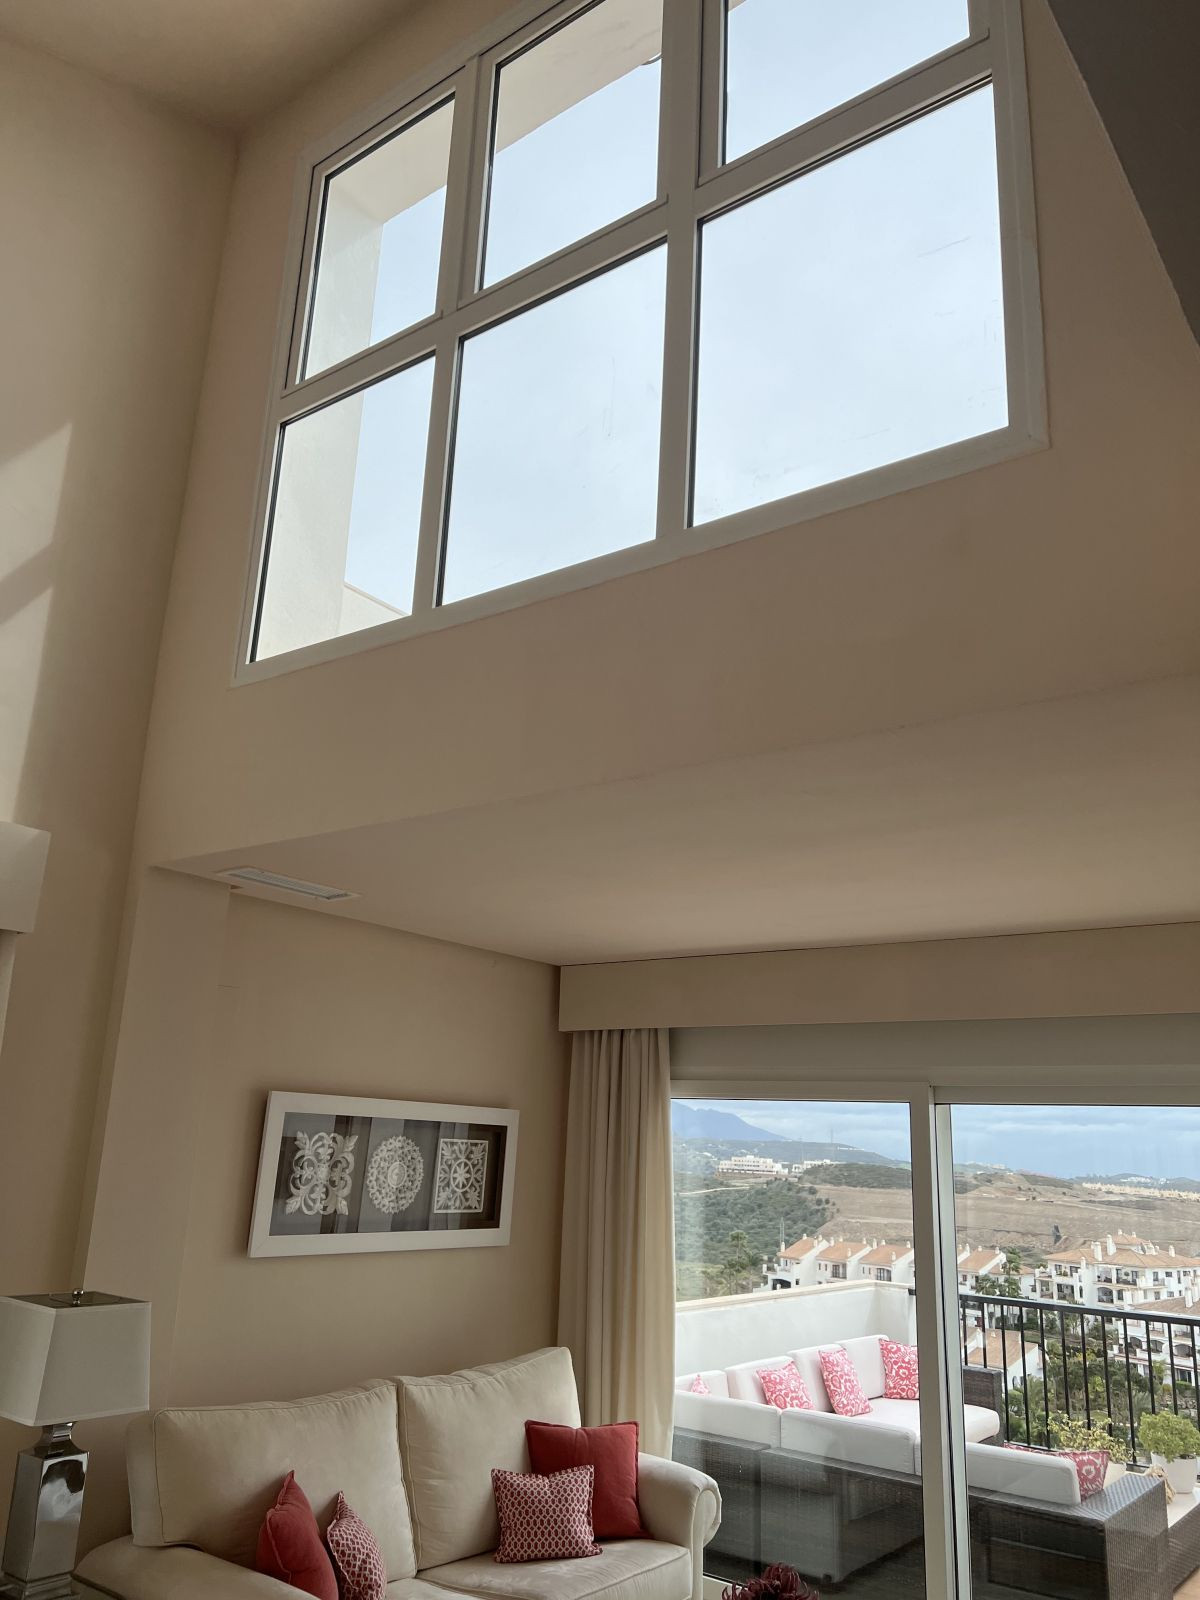 Apartment Penthouse in Riviera del Sol, Costa del Sol
